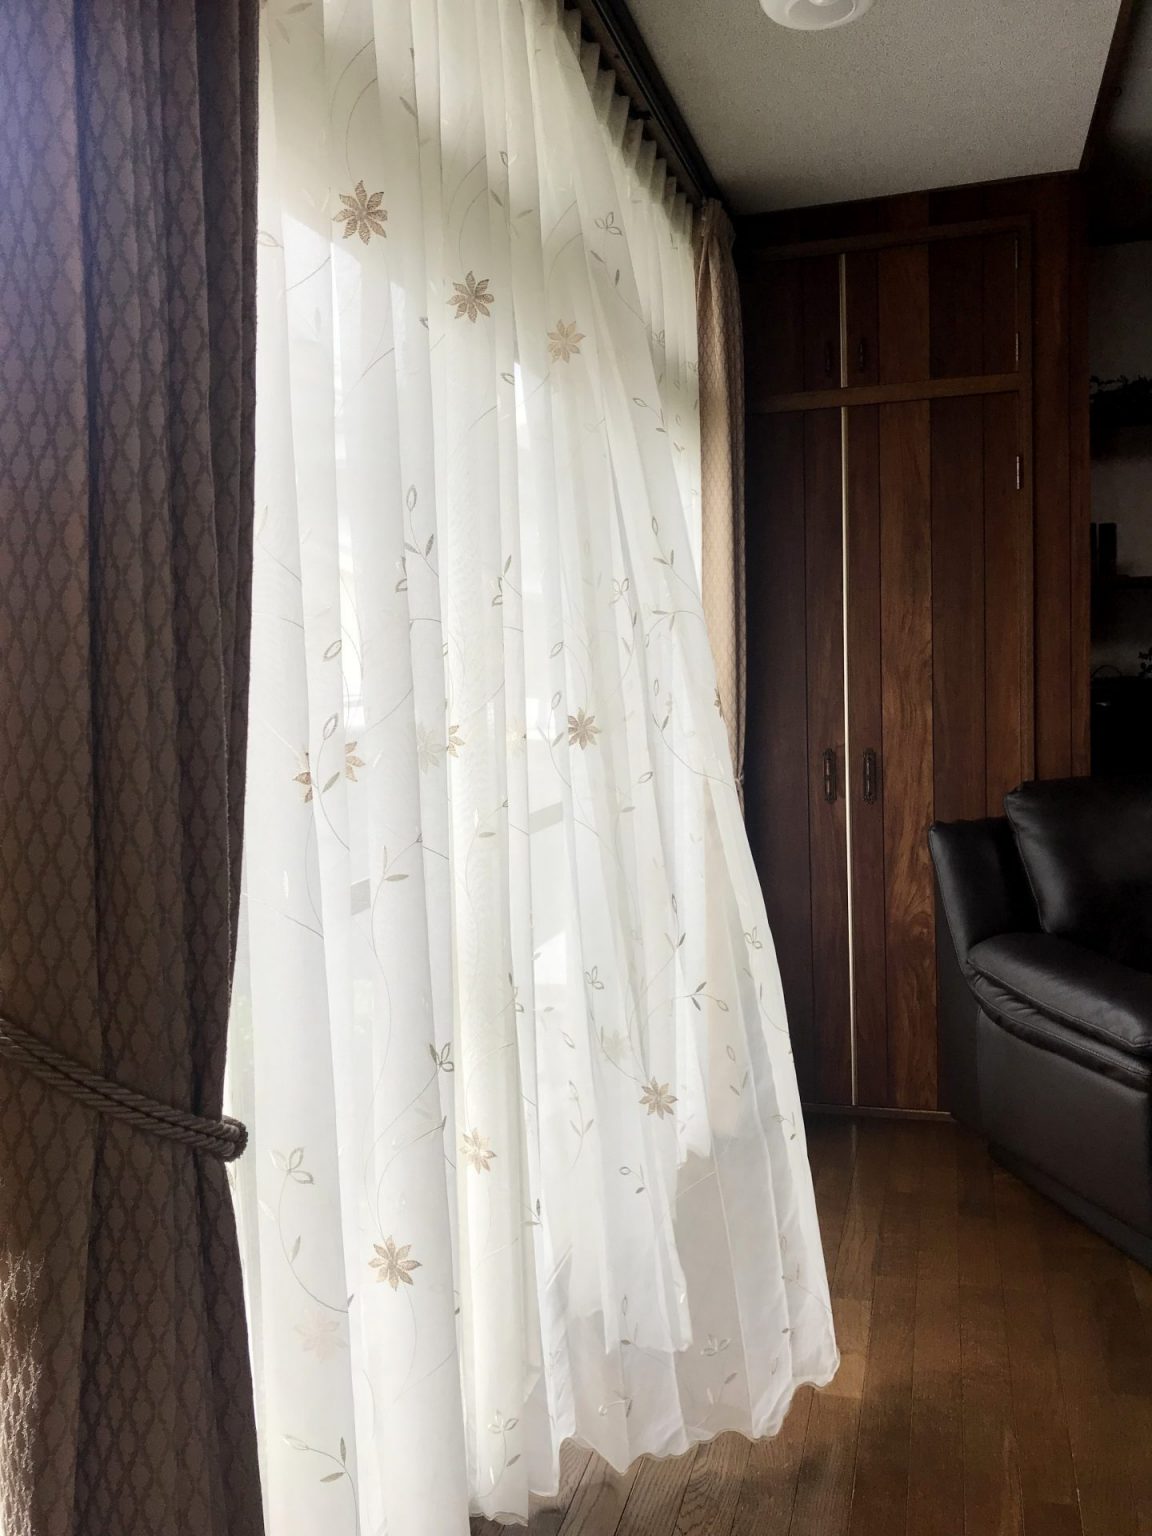 レースカーテンを吊り替えてお部屋の雰囲気を変える | 愛知県名古屋市のオーダーカーテン専門店 | カーテンハウスシルクみどり店